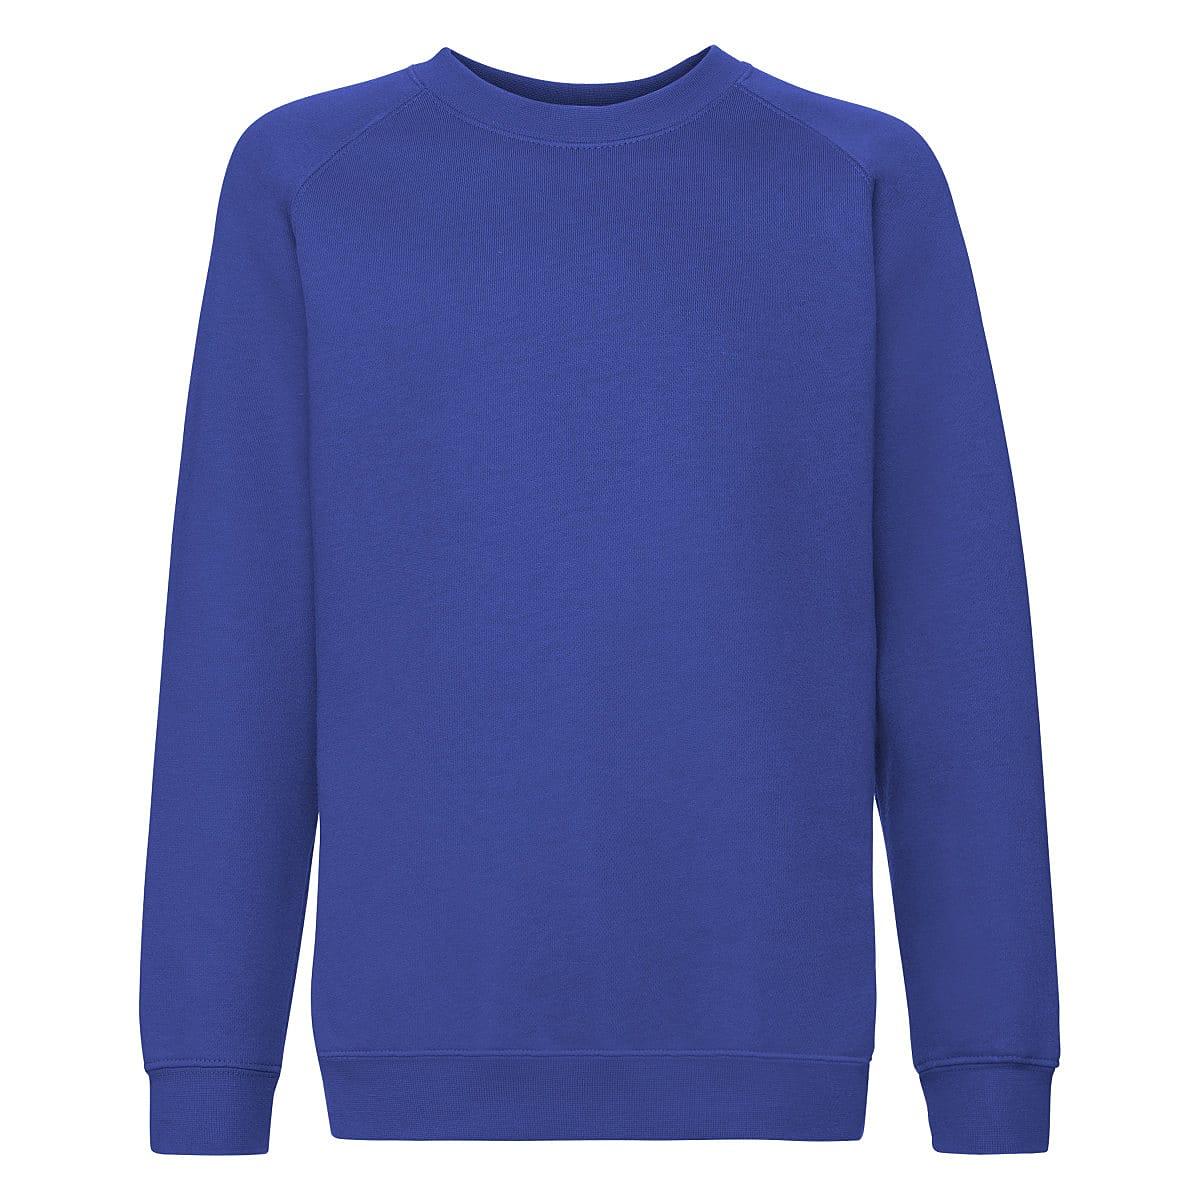 Fruit Of The Loom Childrens Premium Raglan Sleeve Sweatshirt in Royal Blue (Product Code: 62033)